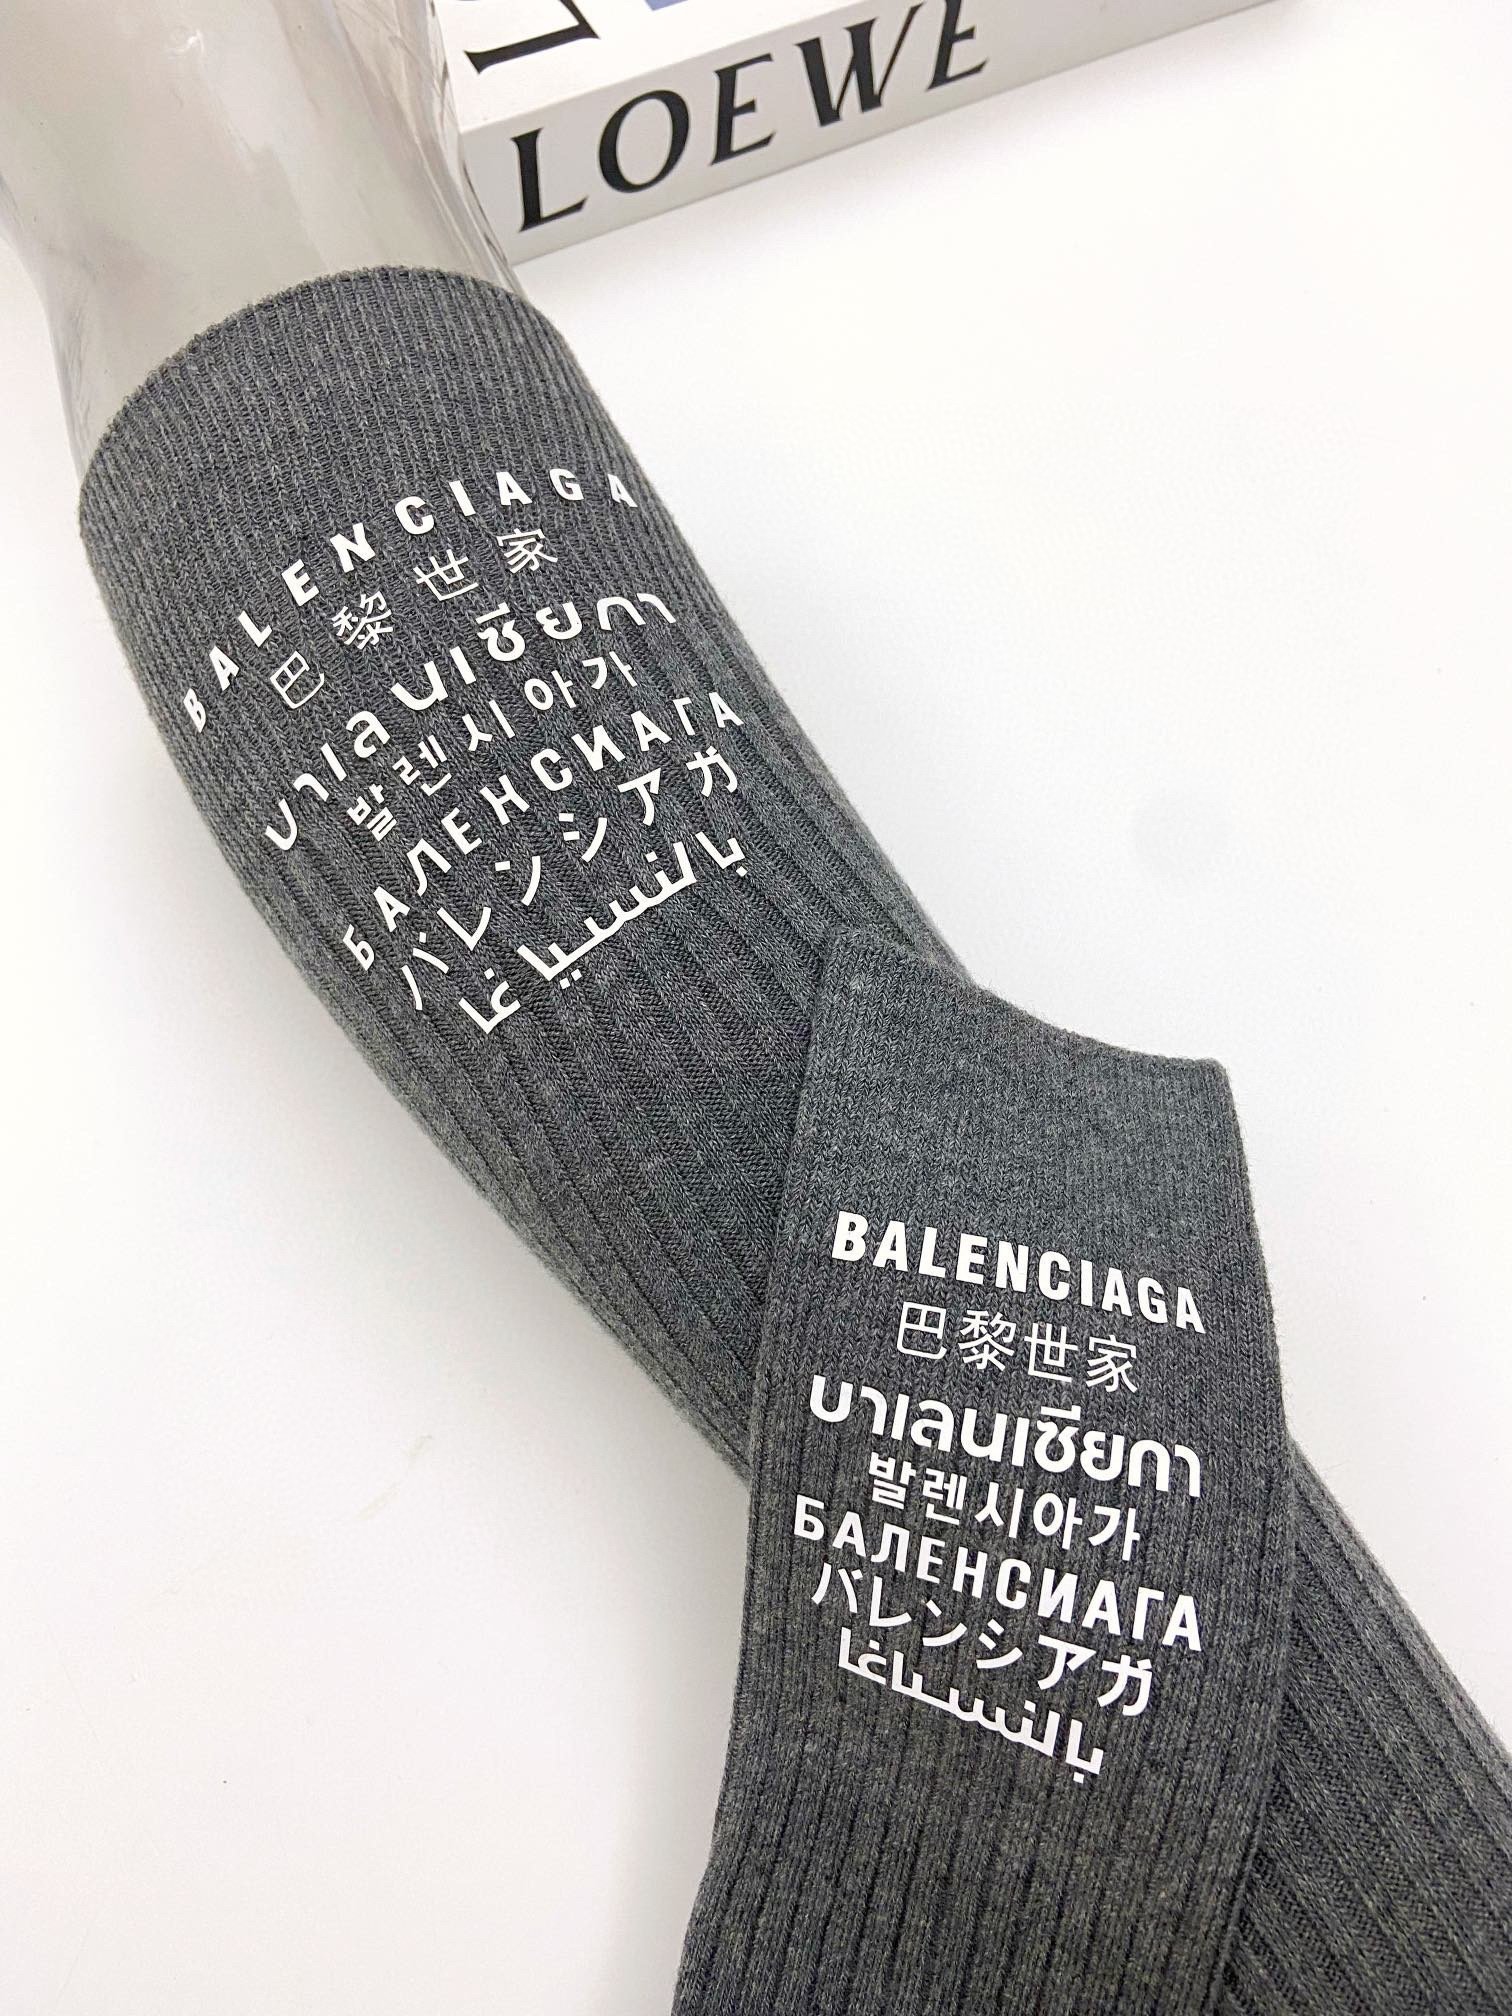 配包装一盒一双balenciaga巴黎世家立体硅胶经典字母长筒袜小腿袜双针针织材质超完美结合款式经典专柜